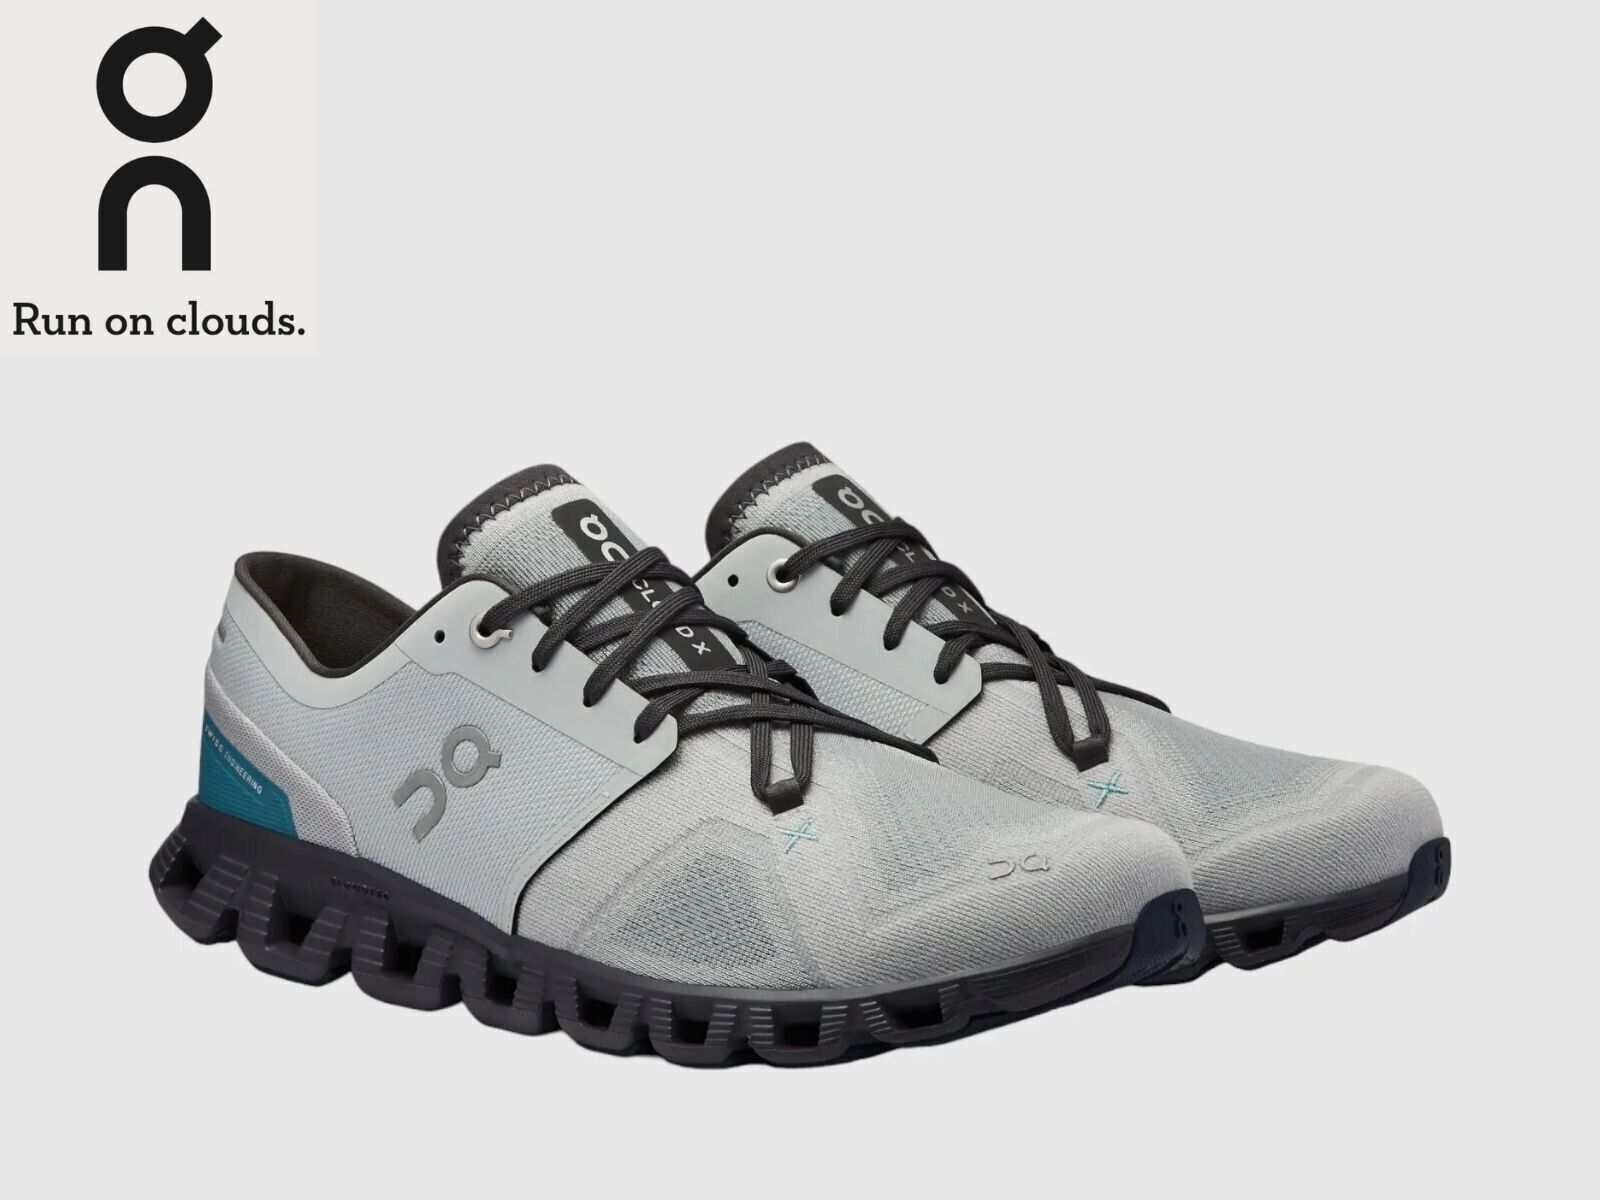 SALE OFF ON CLOUD X 3 Men's Running Shoes Color Glacier | Iron US Size s*